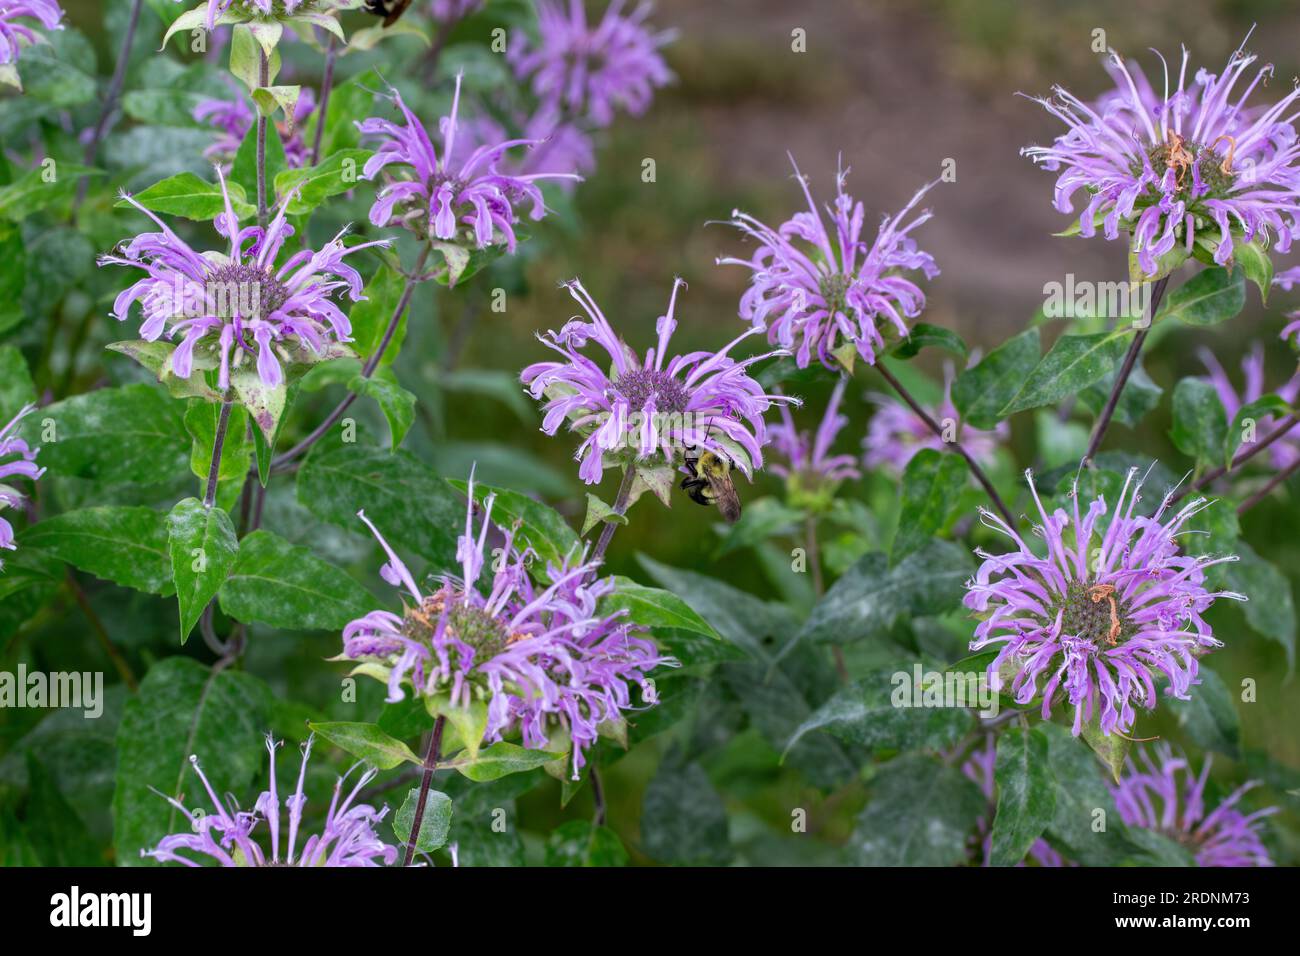 Gros plan texture vue de fond de couleur violette bergamote sauvage (monarda fistulosa) fleurs sauvages, également connu sous le nom de baume d'abeille Banque D'Images